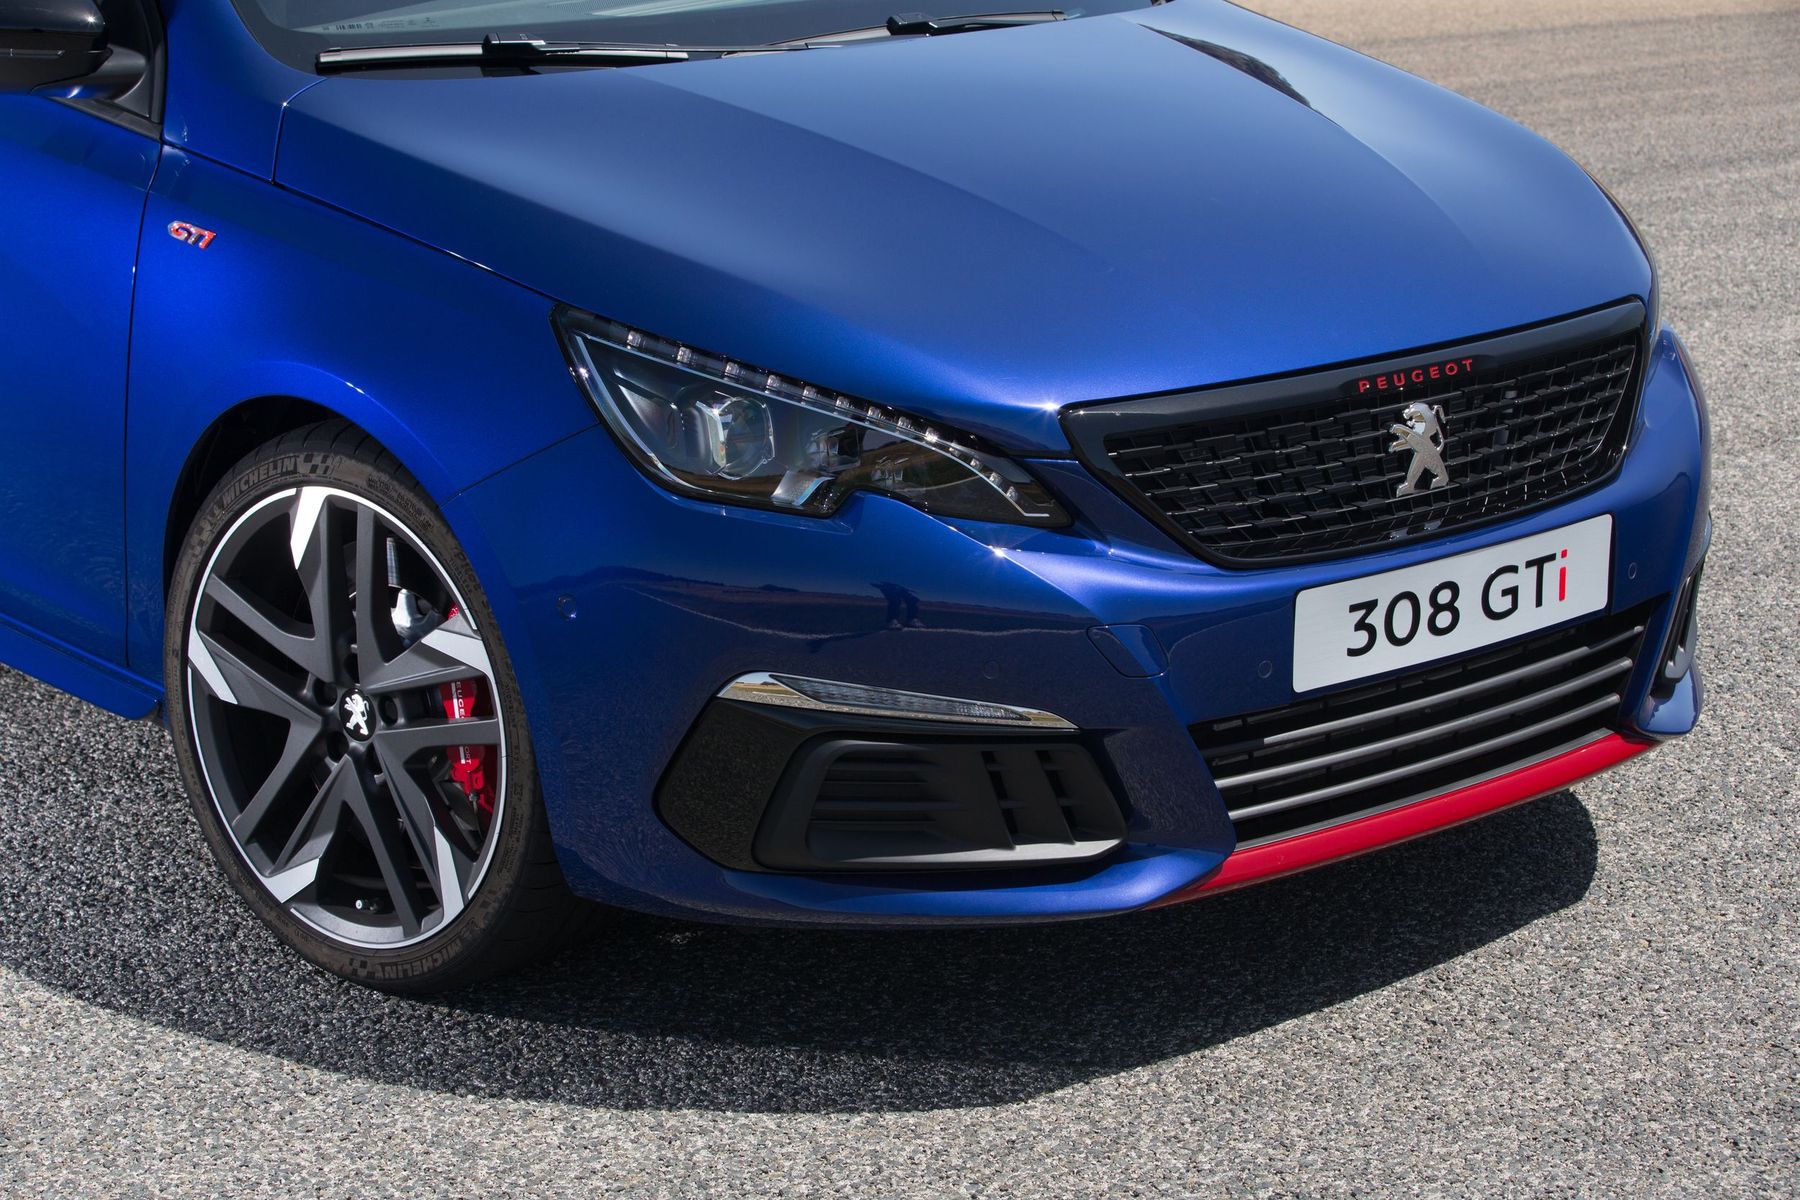 Essai 308 GTi 2015 : notre avis détaillé sur la nouvelle Peugeot Sport